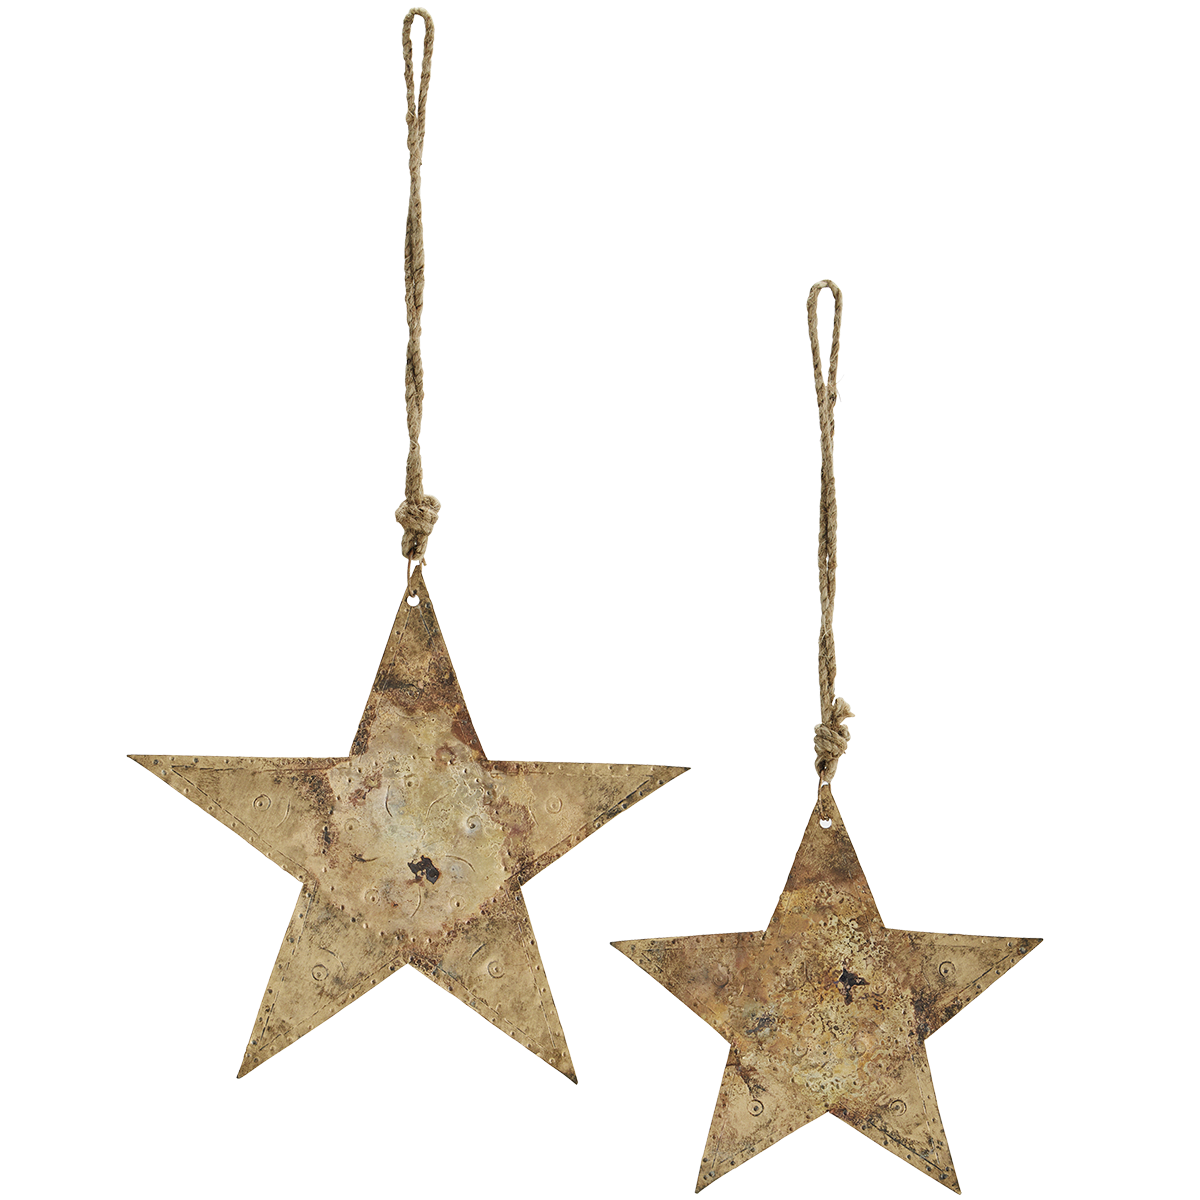 Hanging iron stars